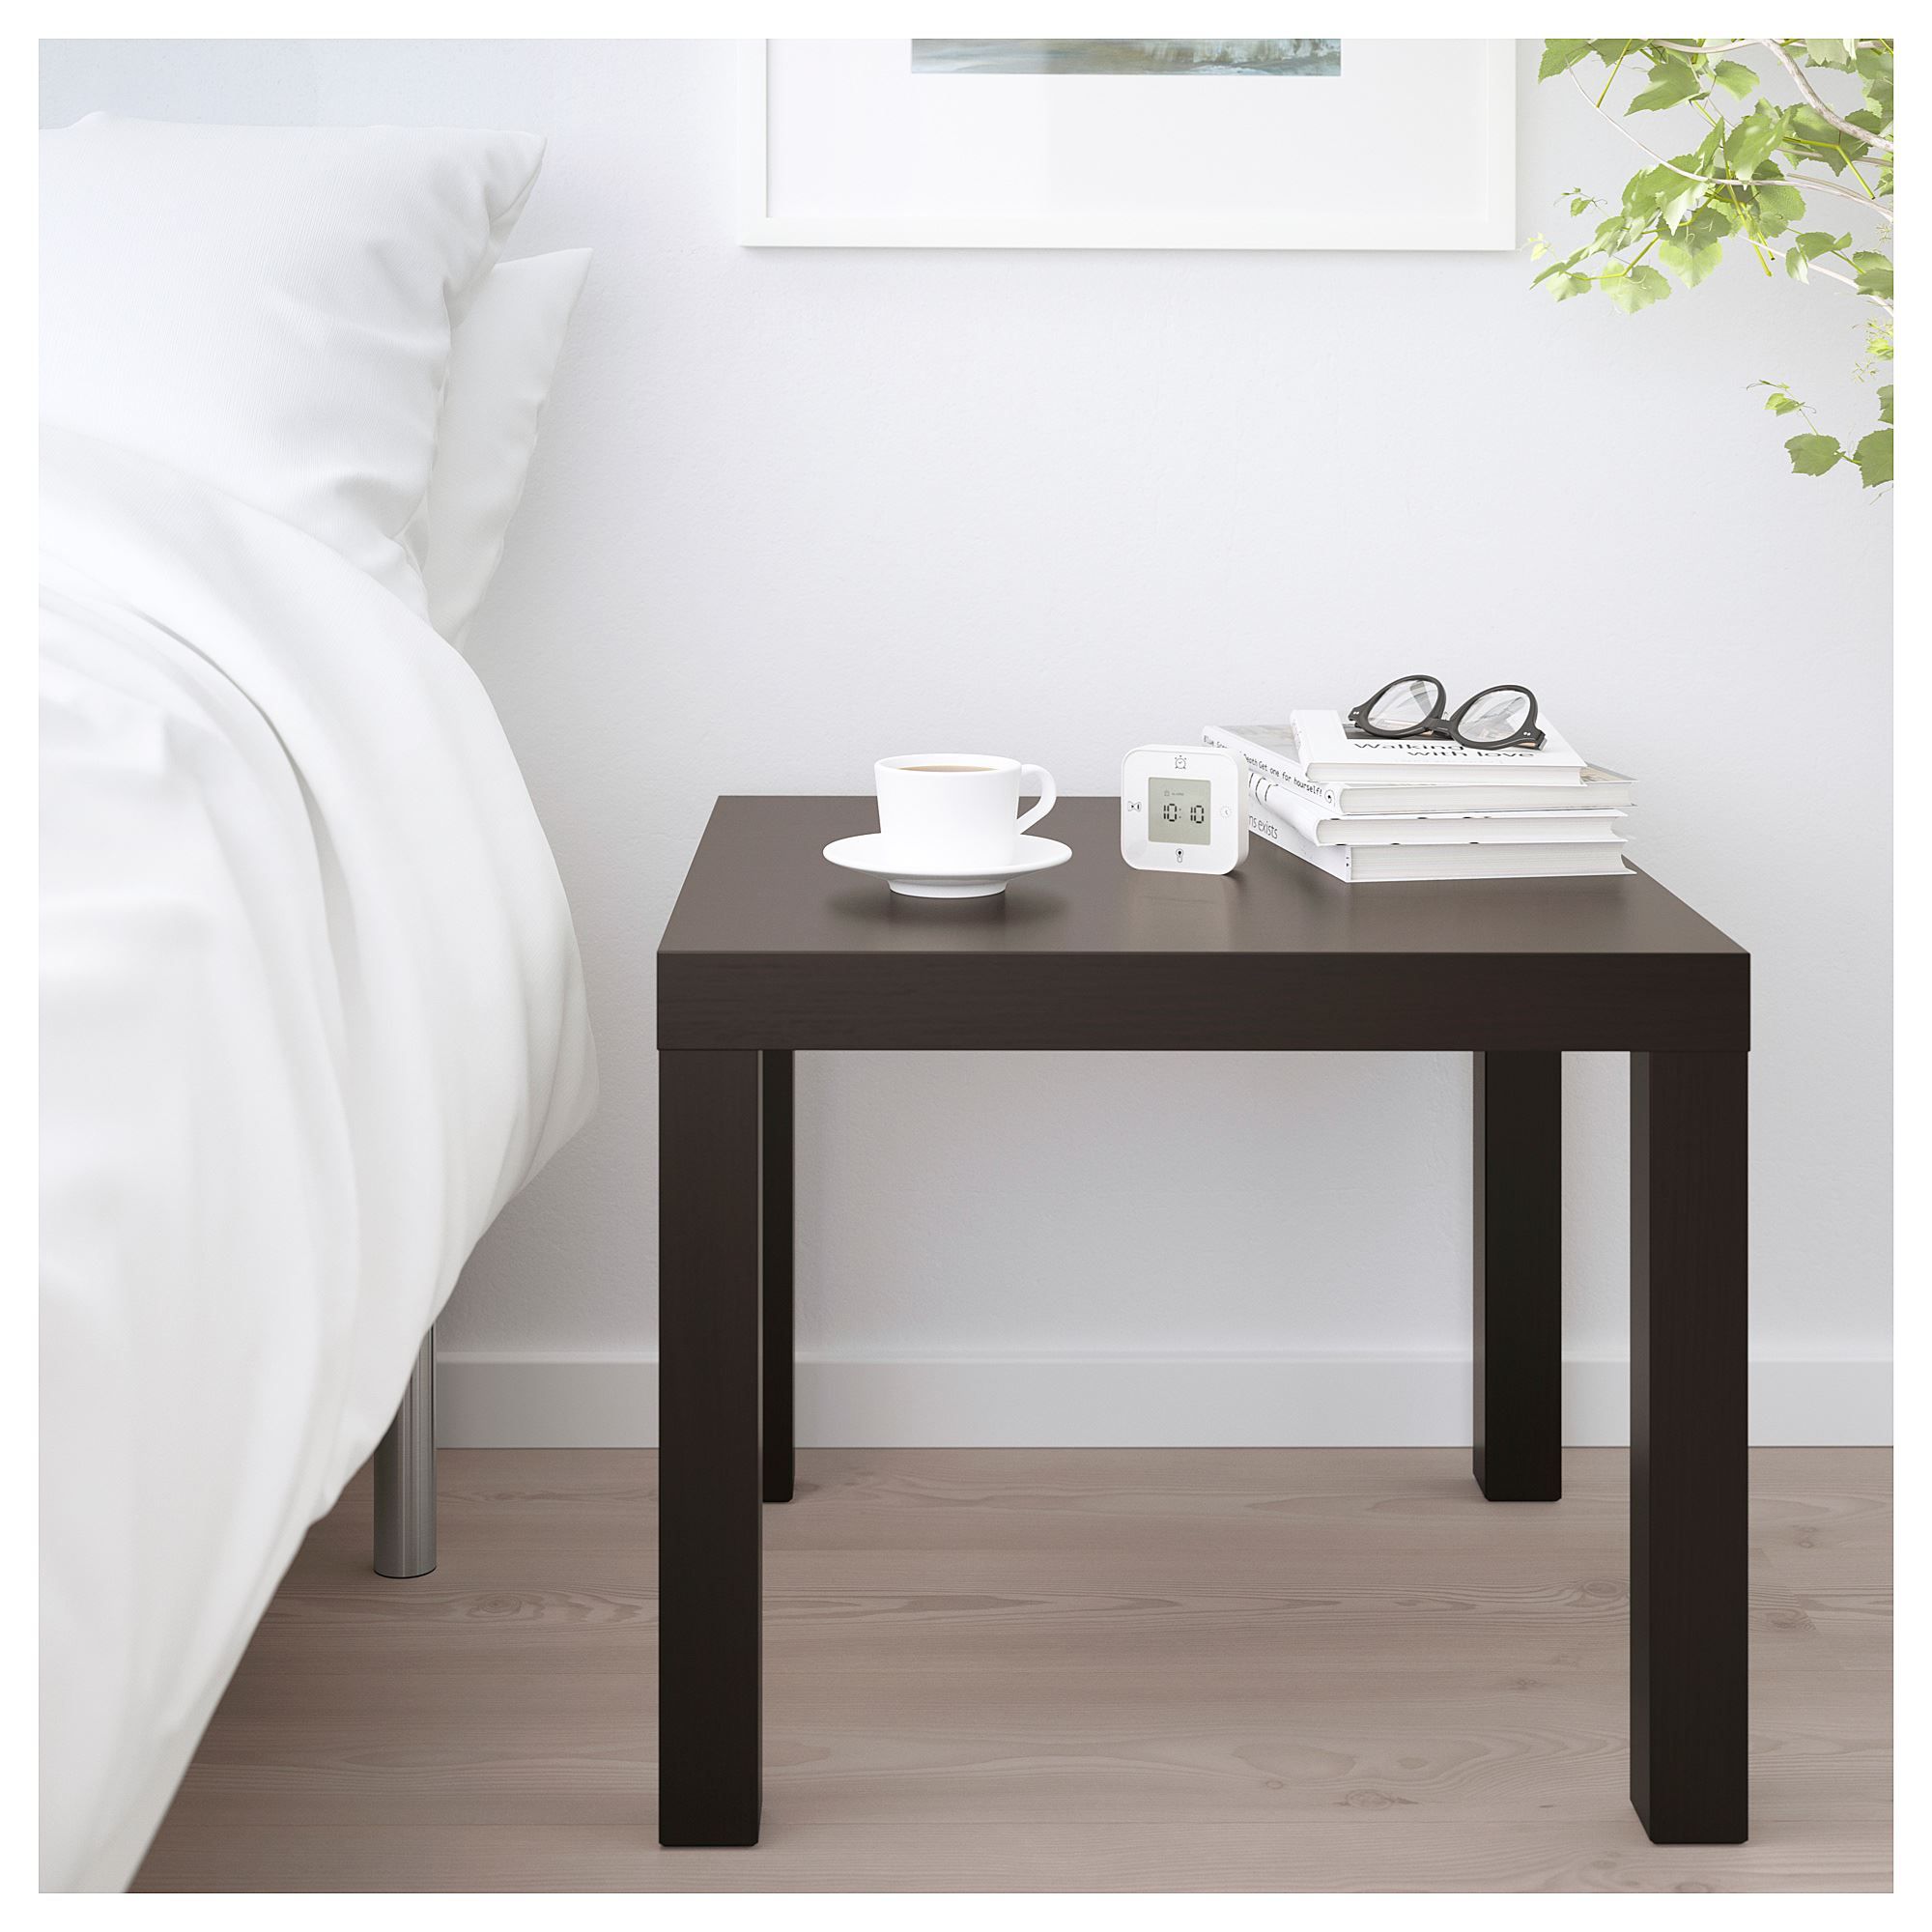 Lack ЛАКК придиванный столик, черно-коричневый55x55 см